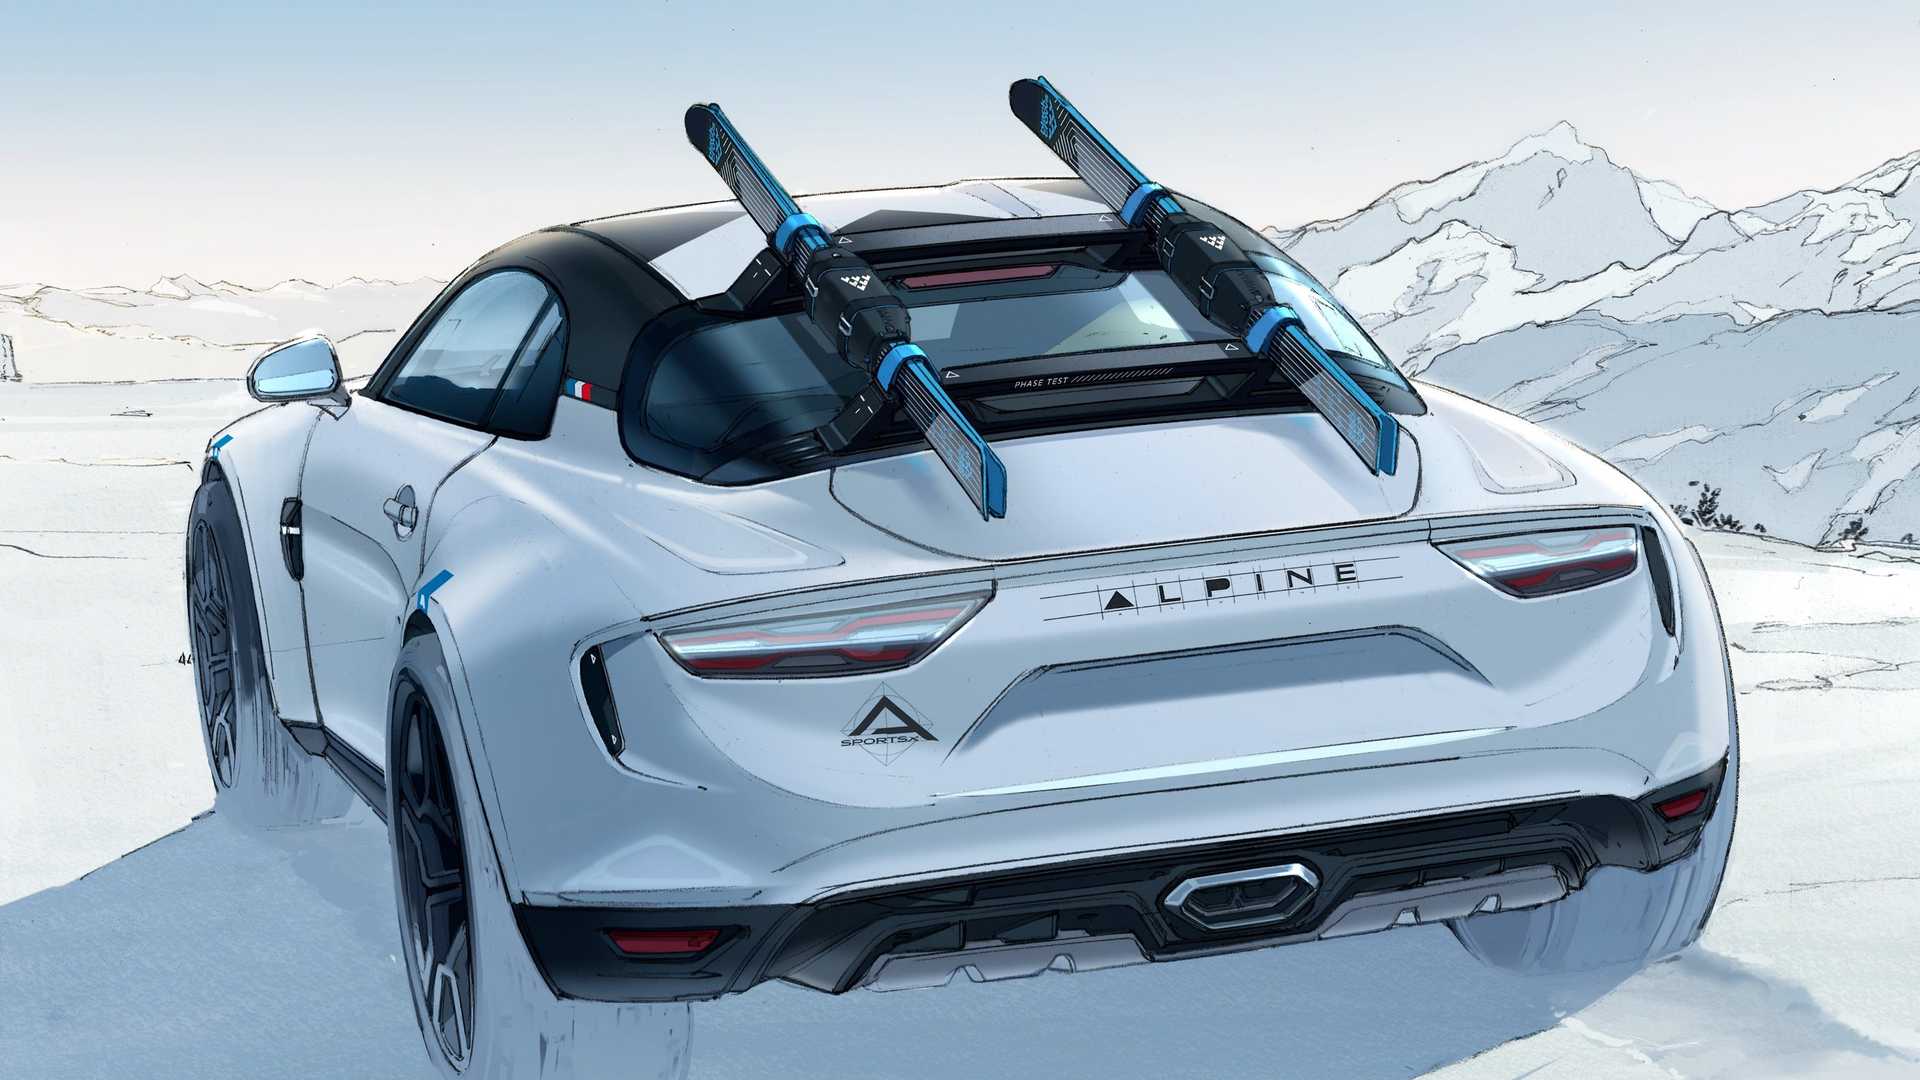 Alpine a110: 1080 кг веса, 1,8 литра объема и 247 л.с. мощности